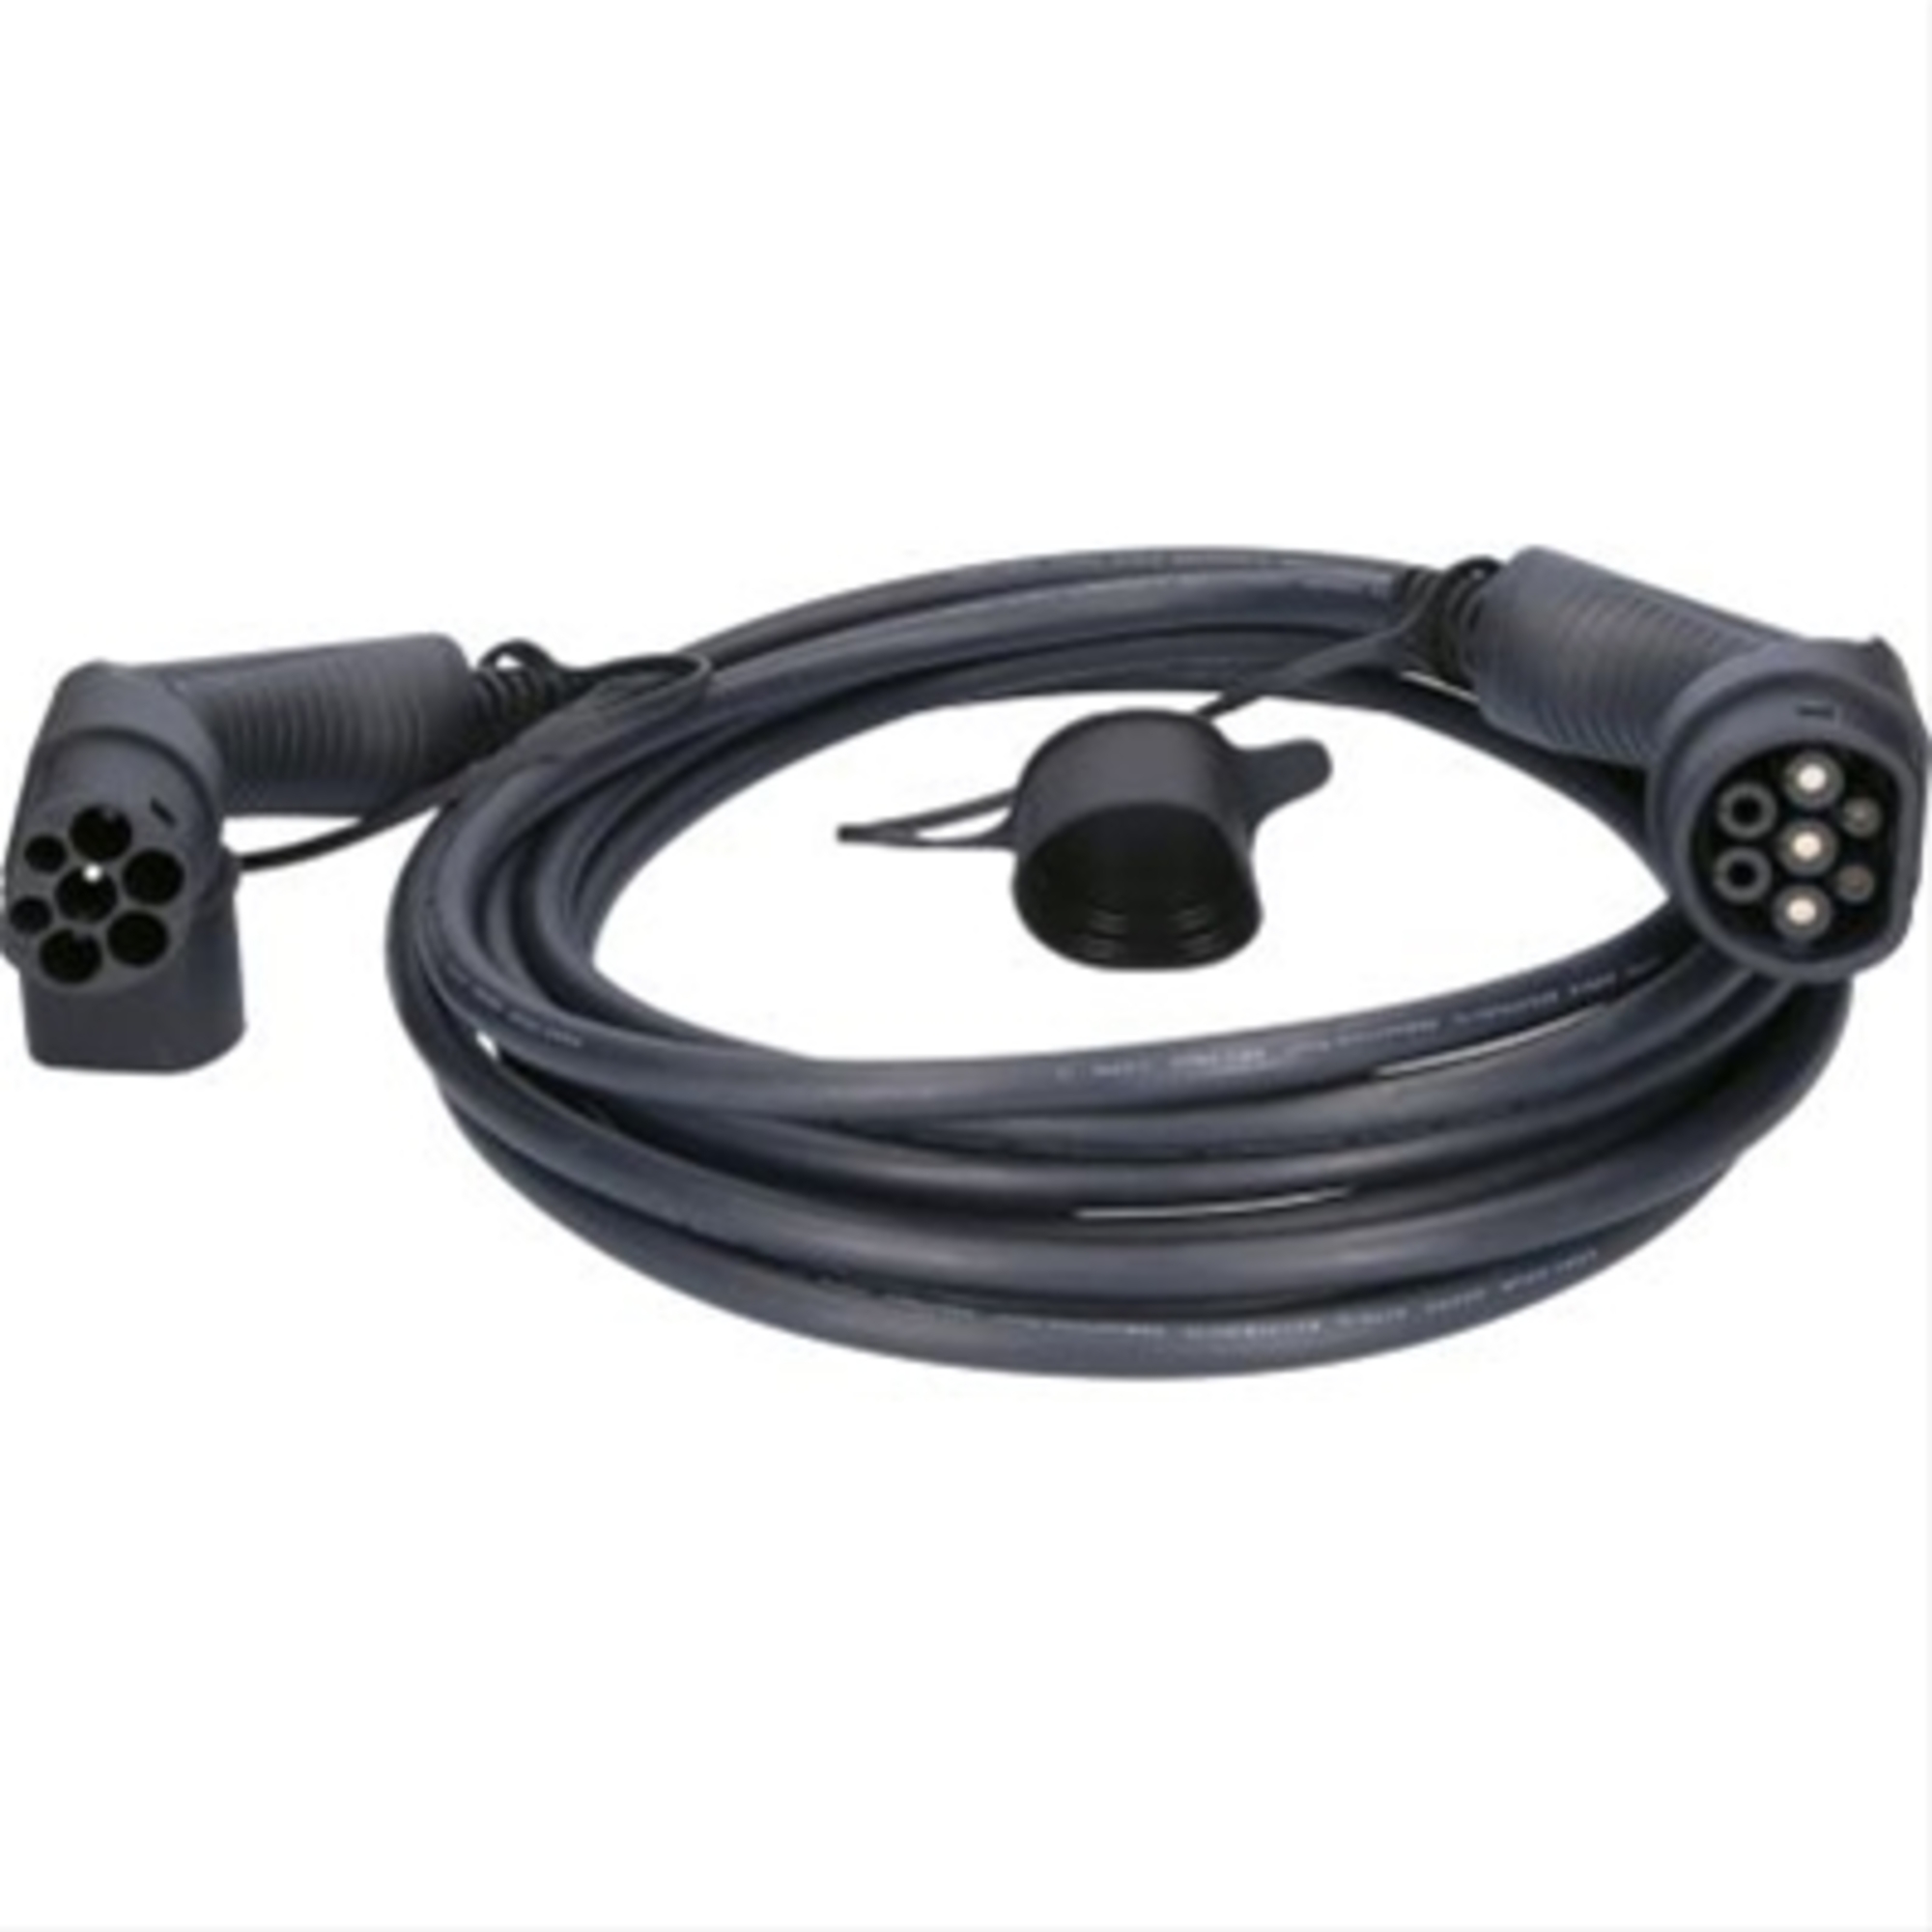 Cablu de incarcare drept typ 2 / typ 2 7.4 kw 230 v 32 a 8m-efuturo ks-tools